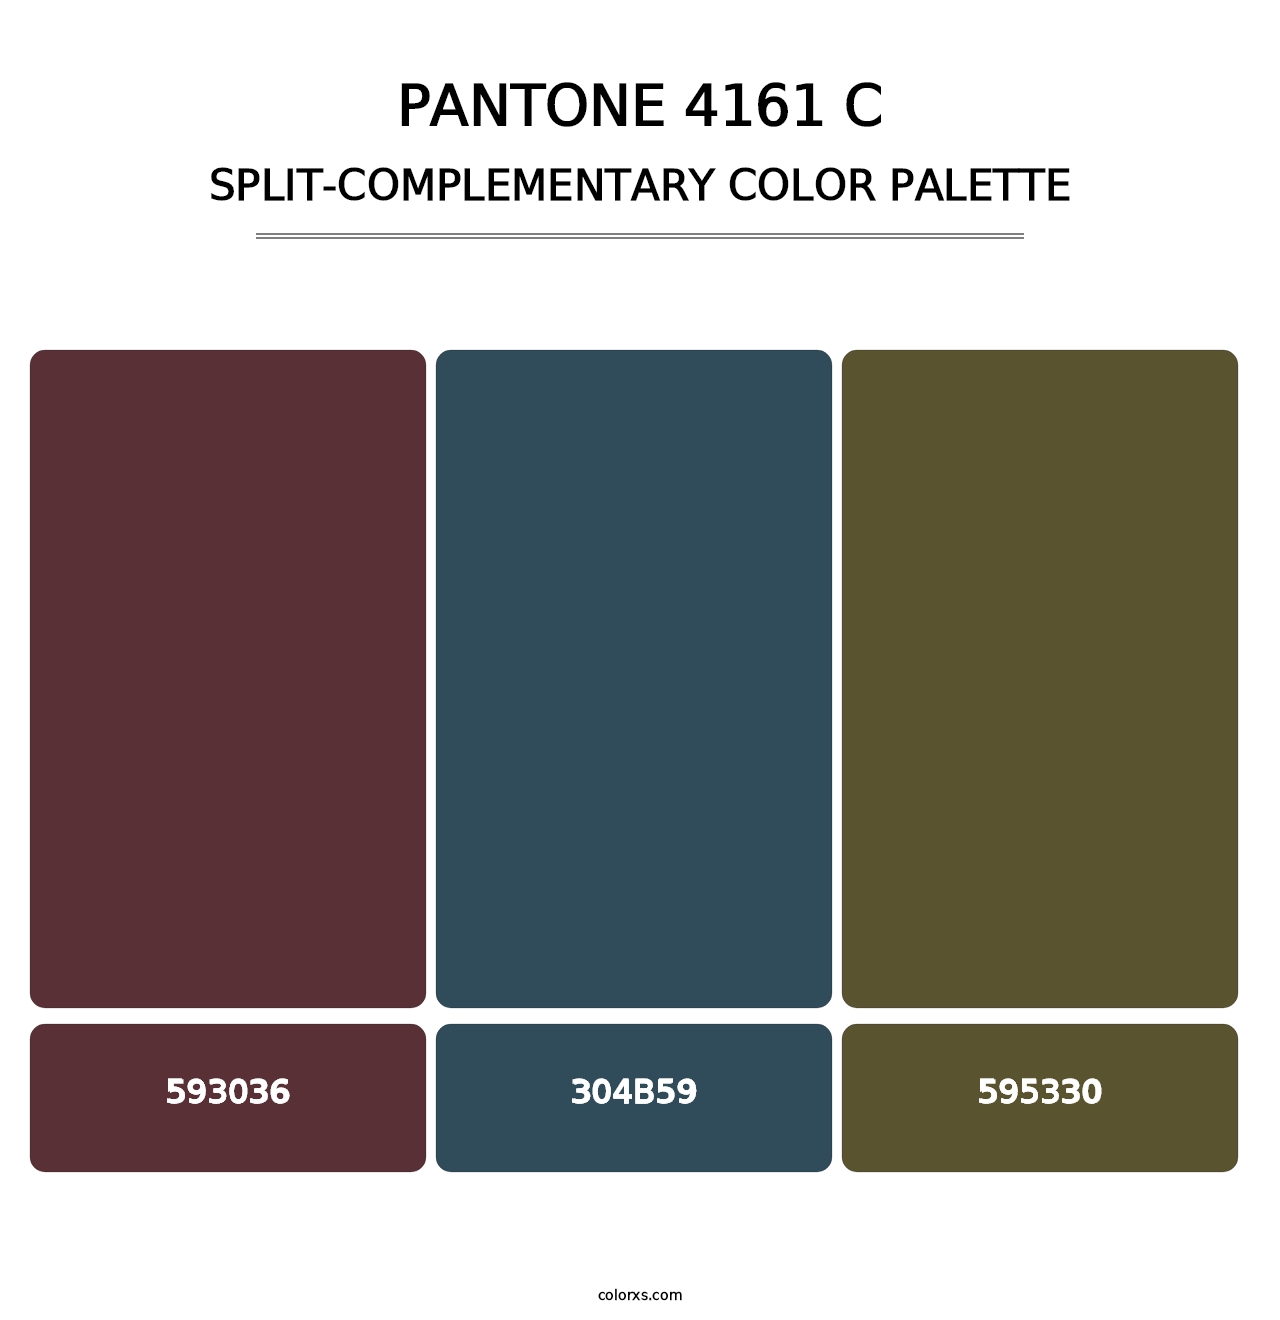 PANTONE 4161 C - Split-Complementary Color Palette